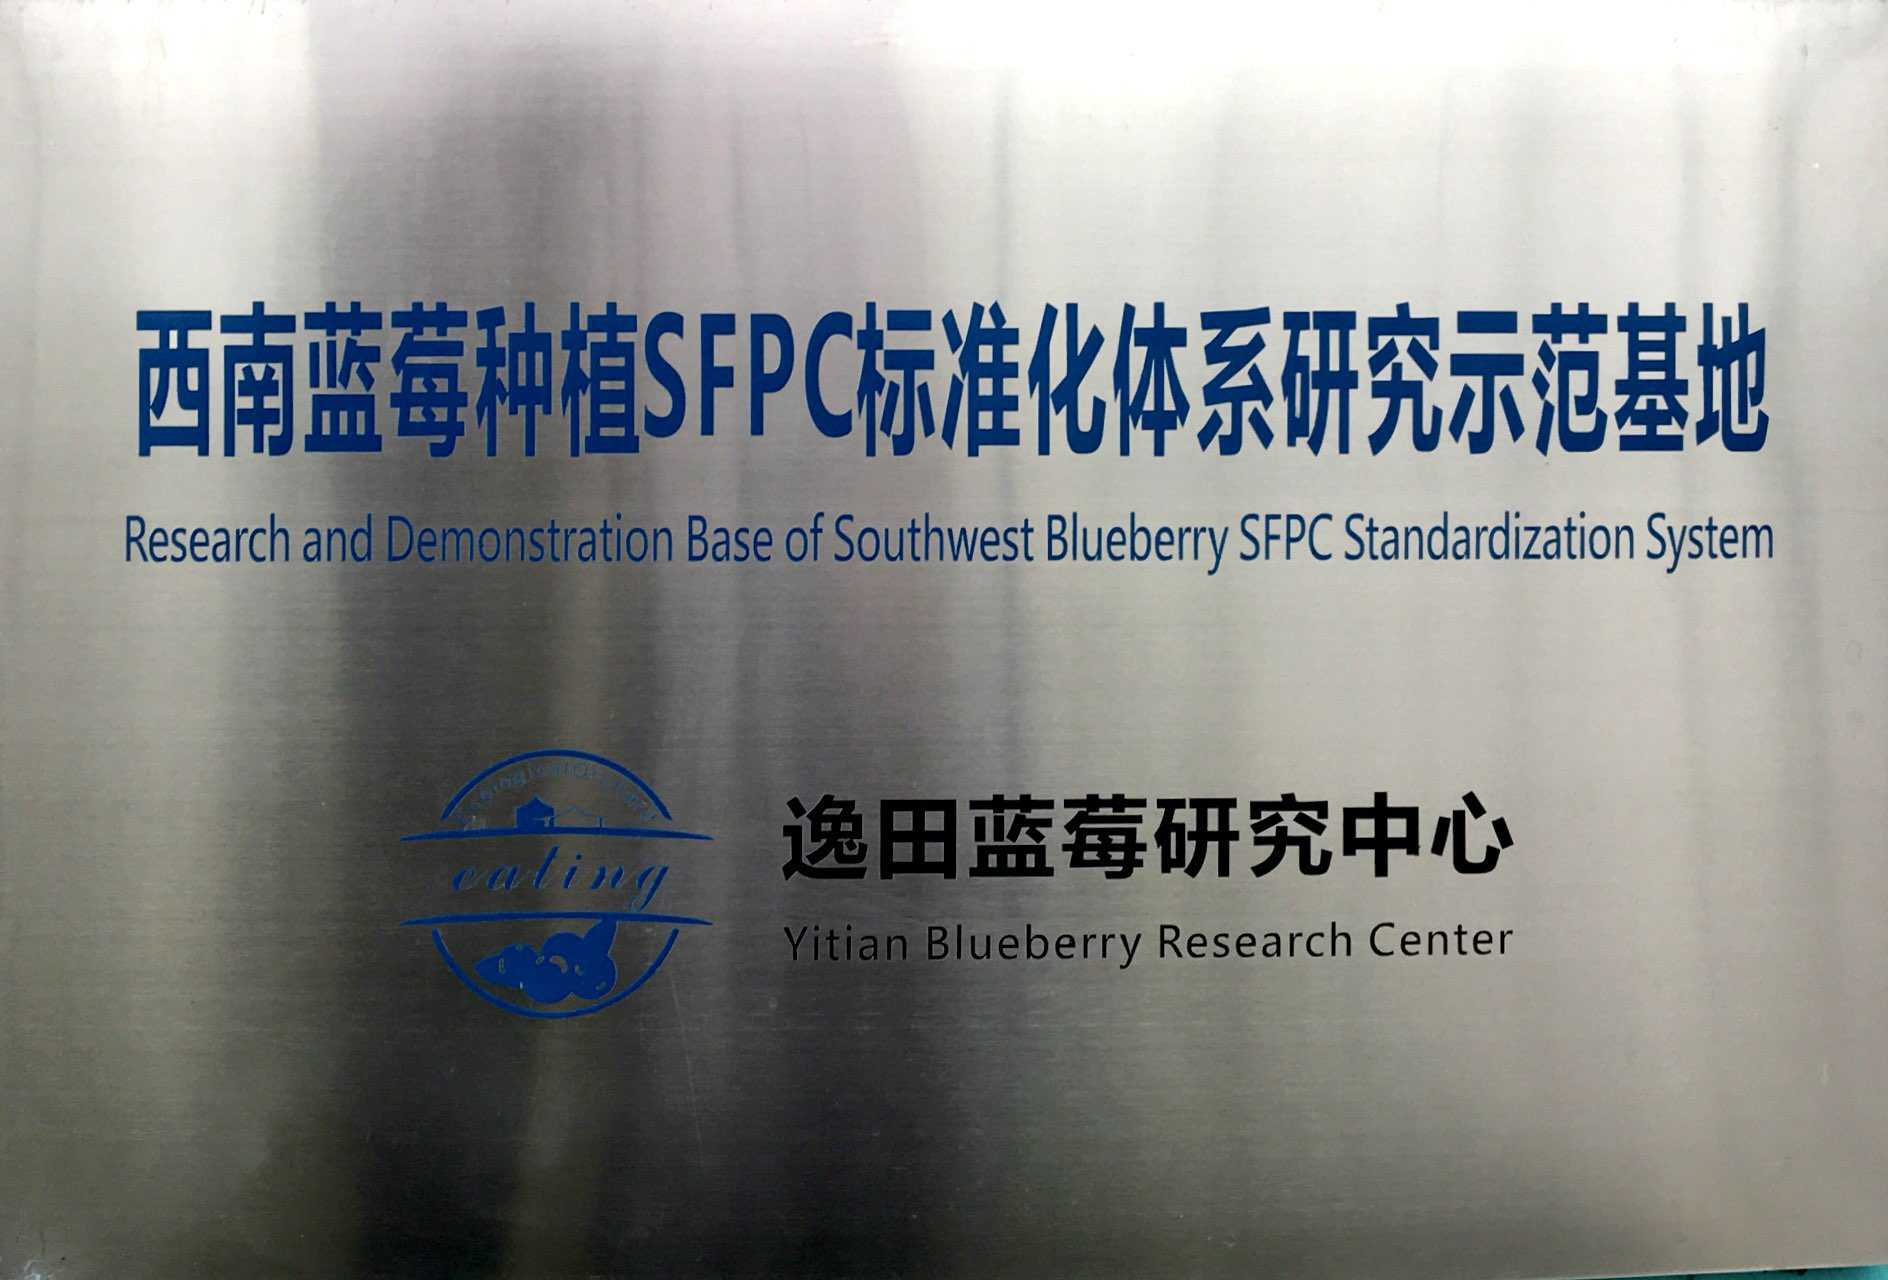 西南蓝莓种植SFPC标准化体系研究示范基地—逸田蓝莓研究中心